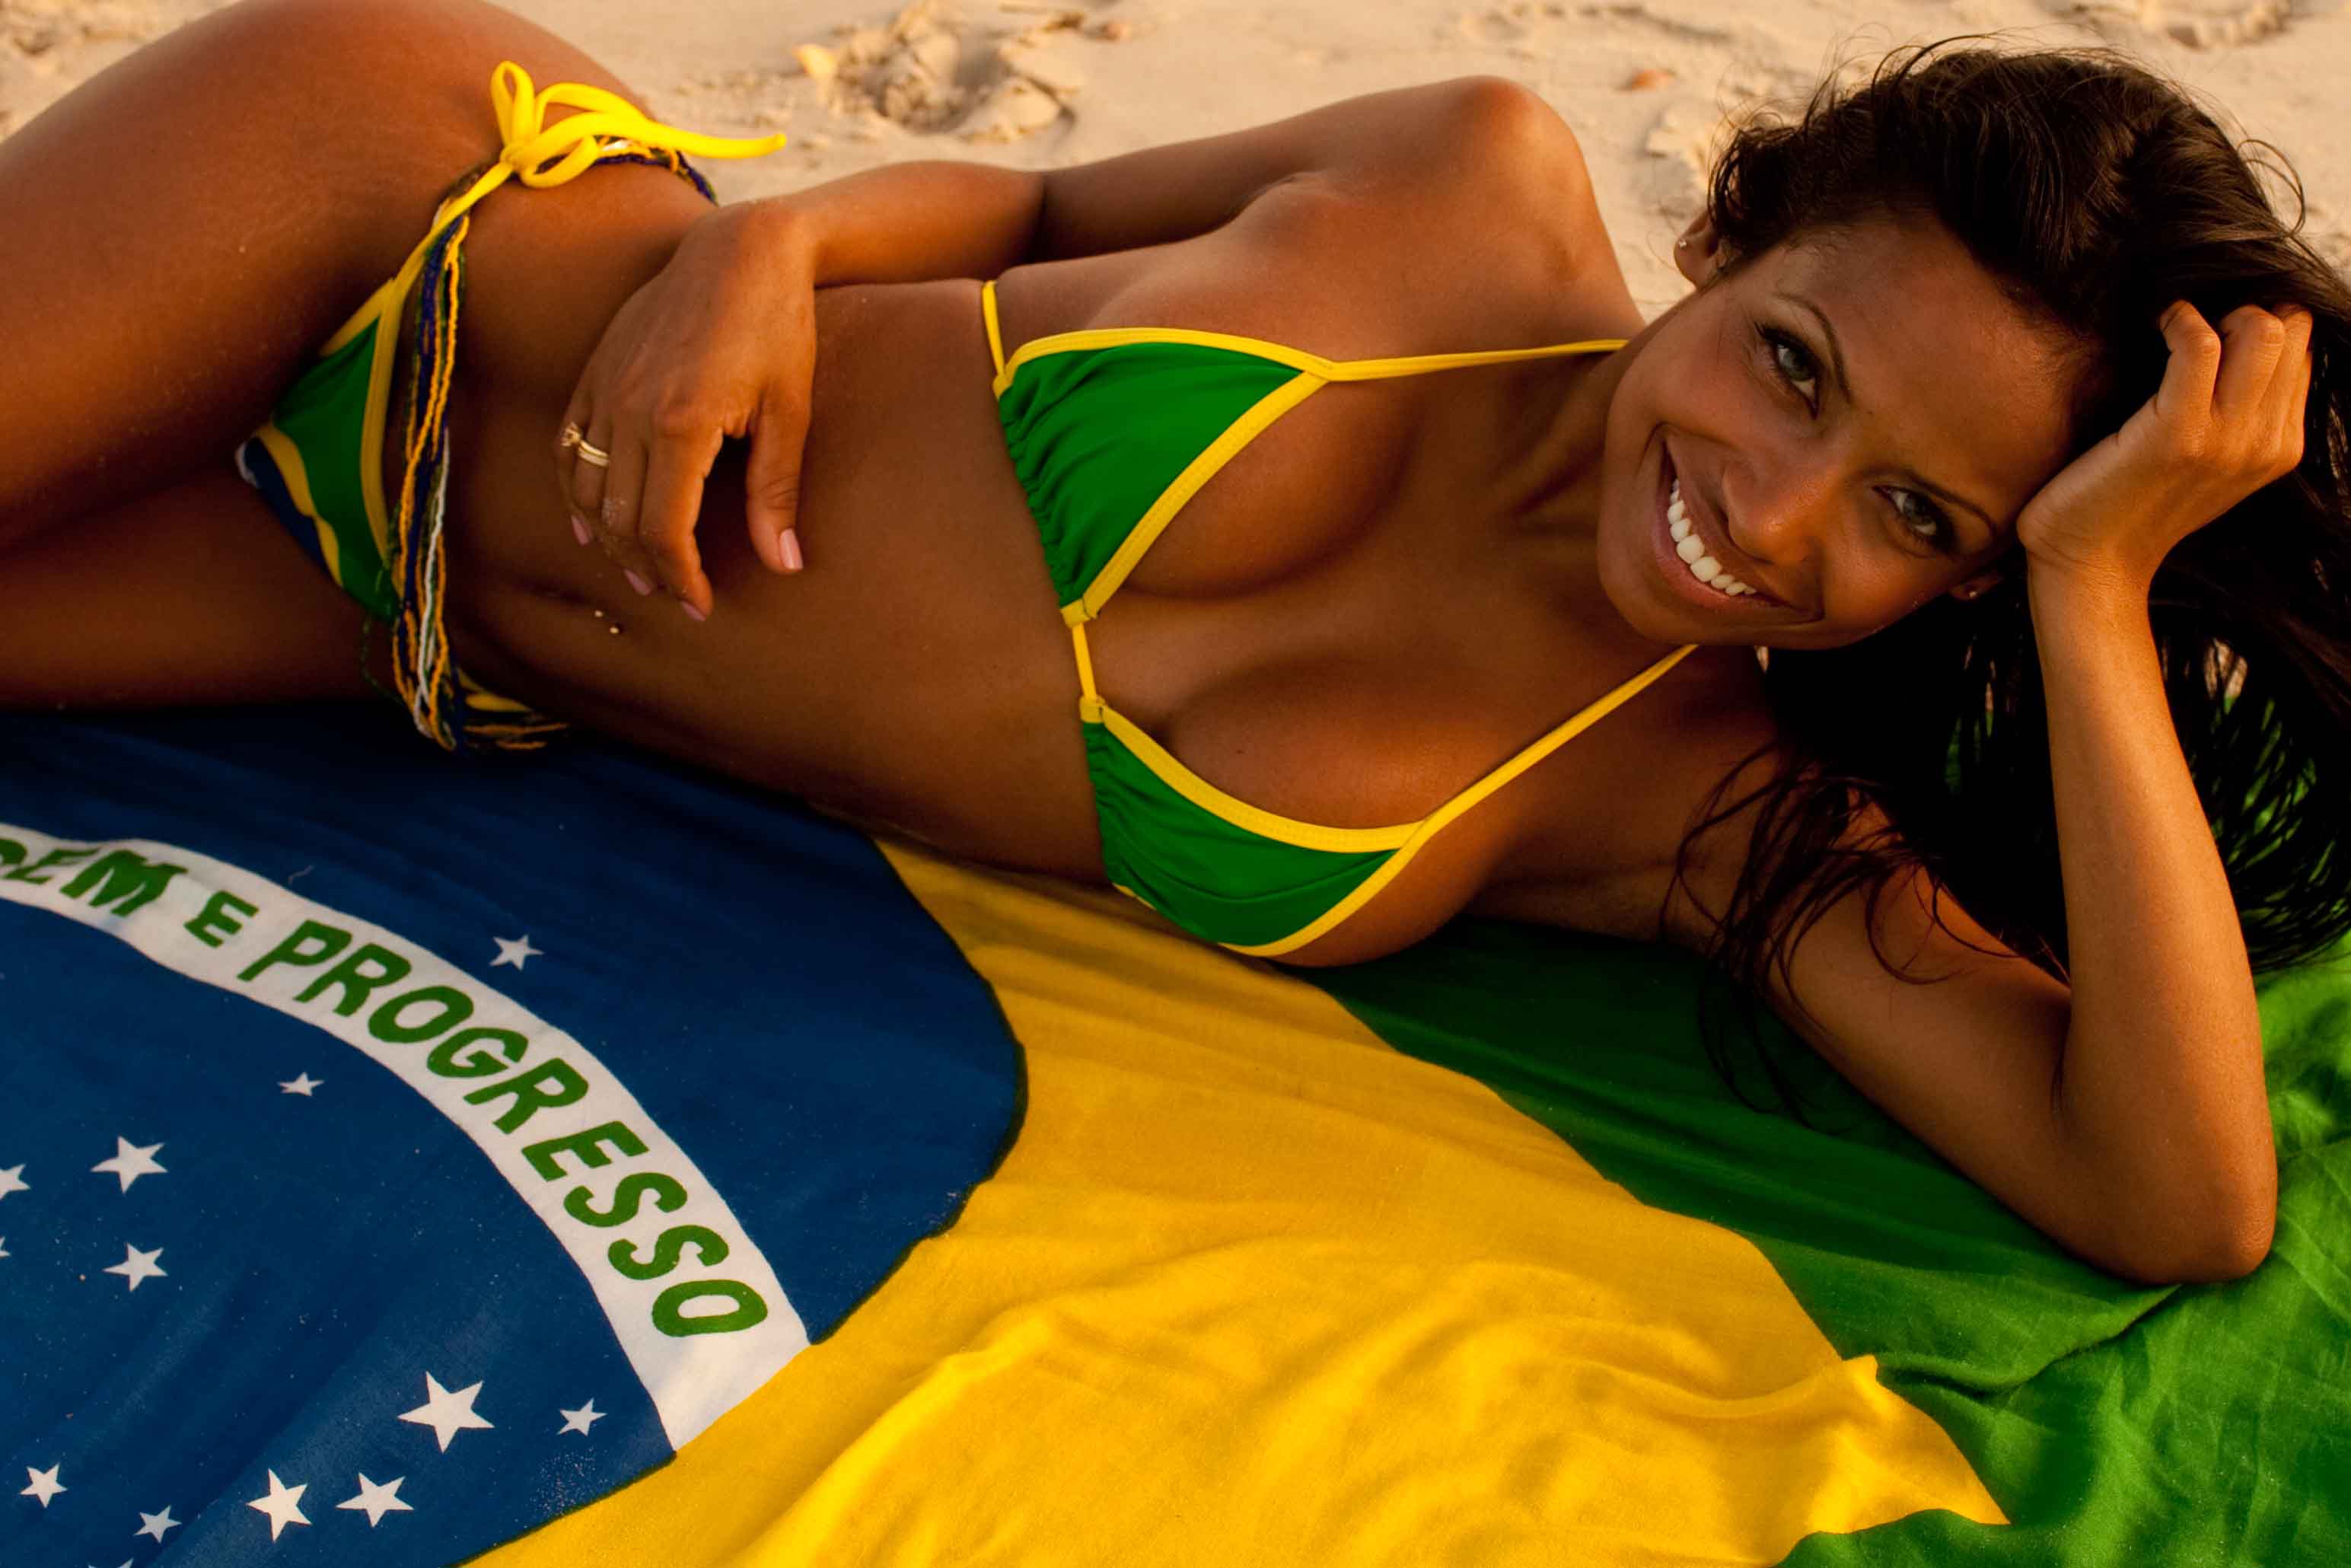 Asmr erotic sexy brazilian girl image